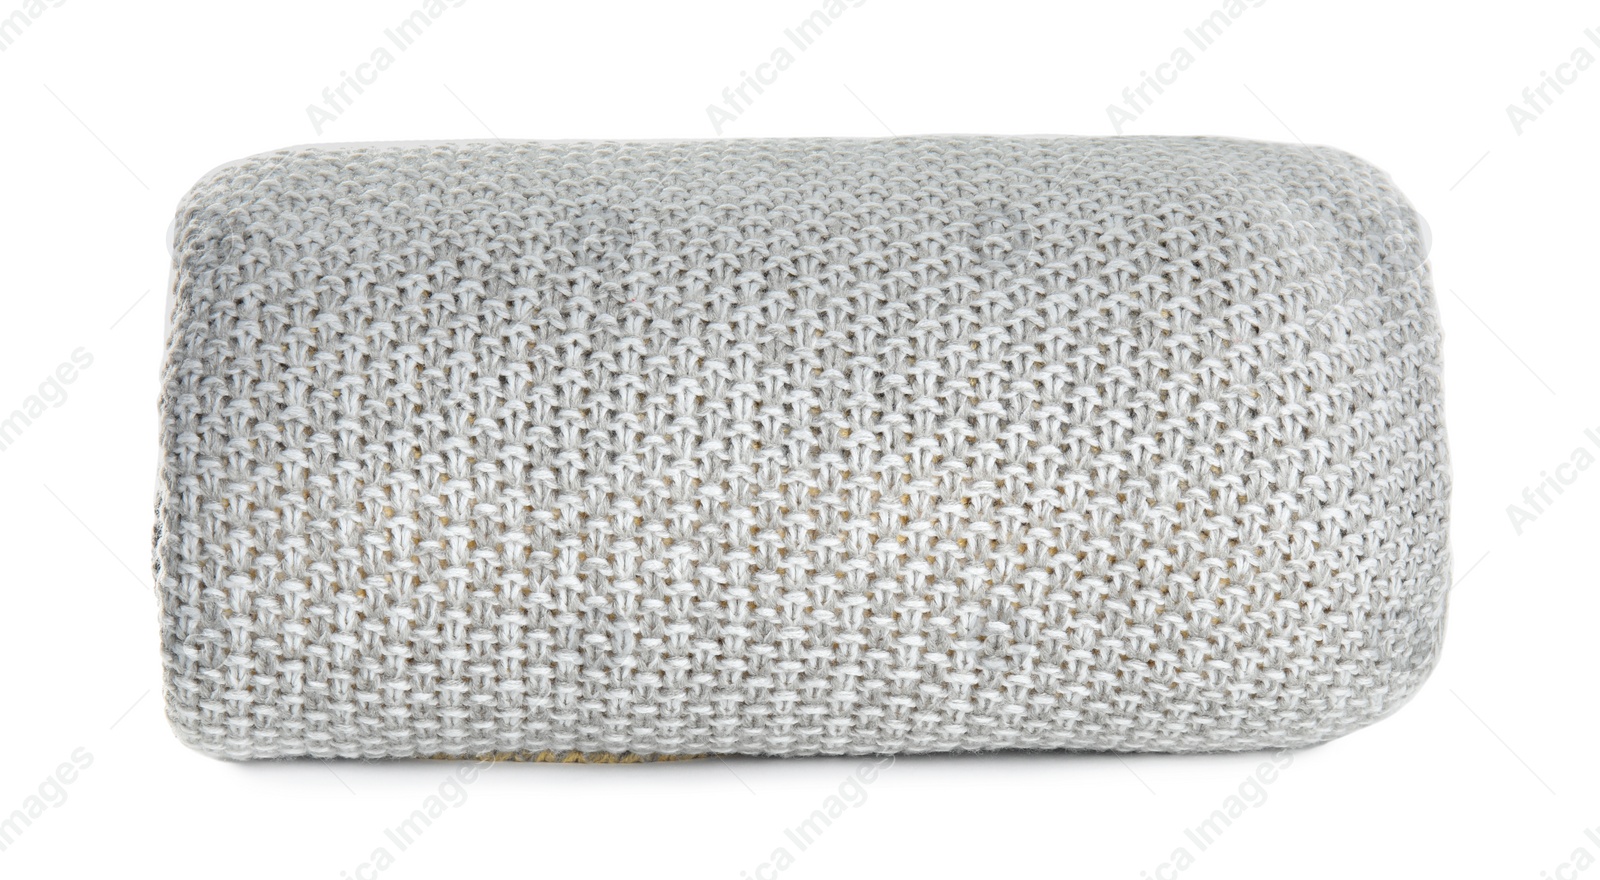 Photo of Stylish grey knitted plaid on white background